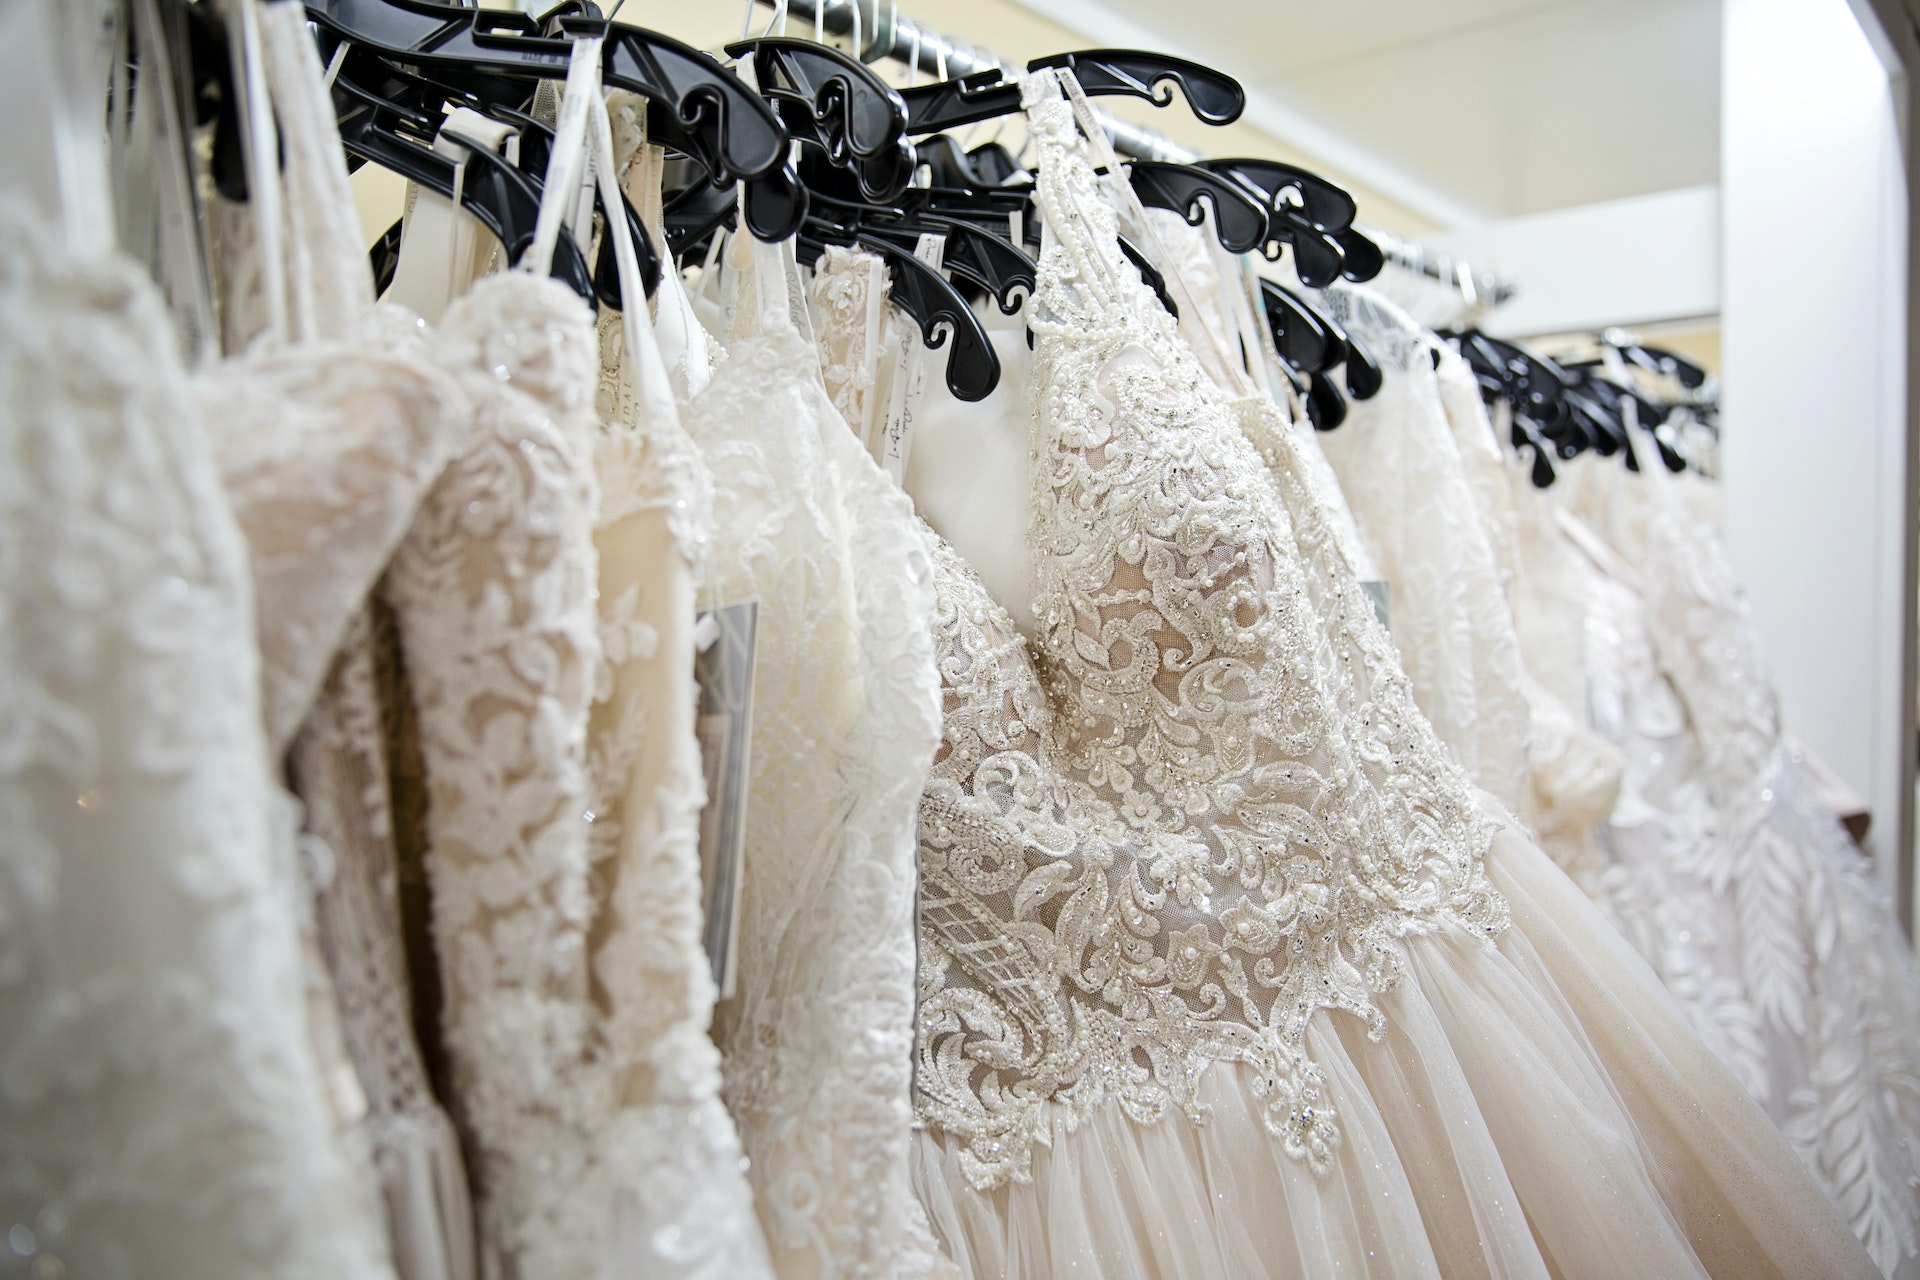 Robes de mariée suspendues à une étagère en tissu | Source : Pexels